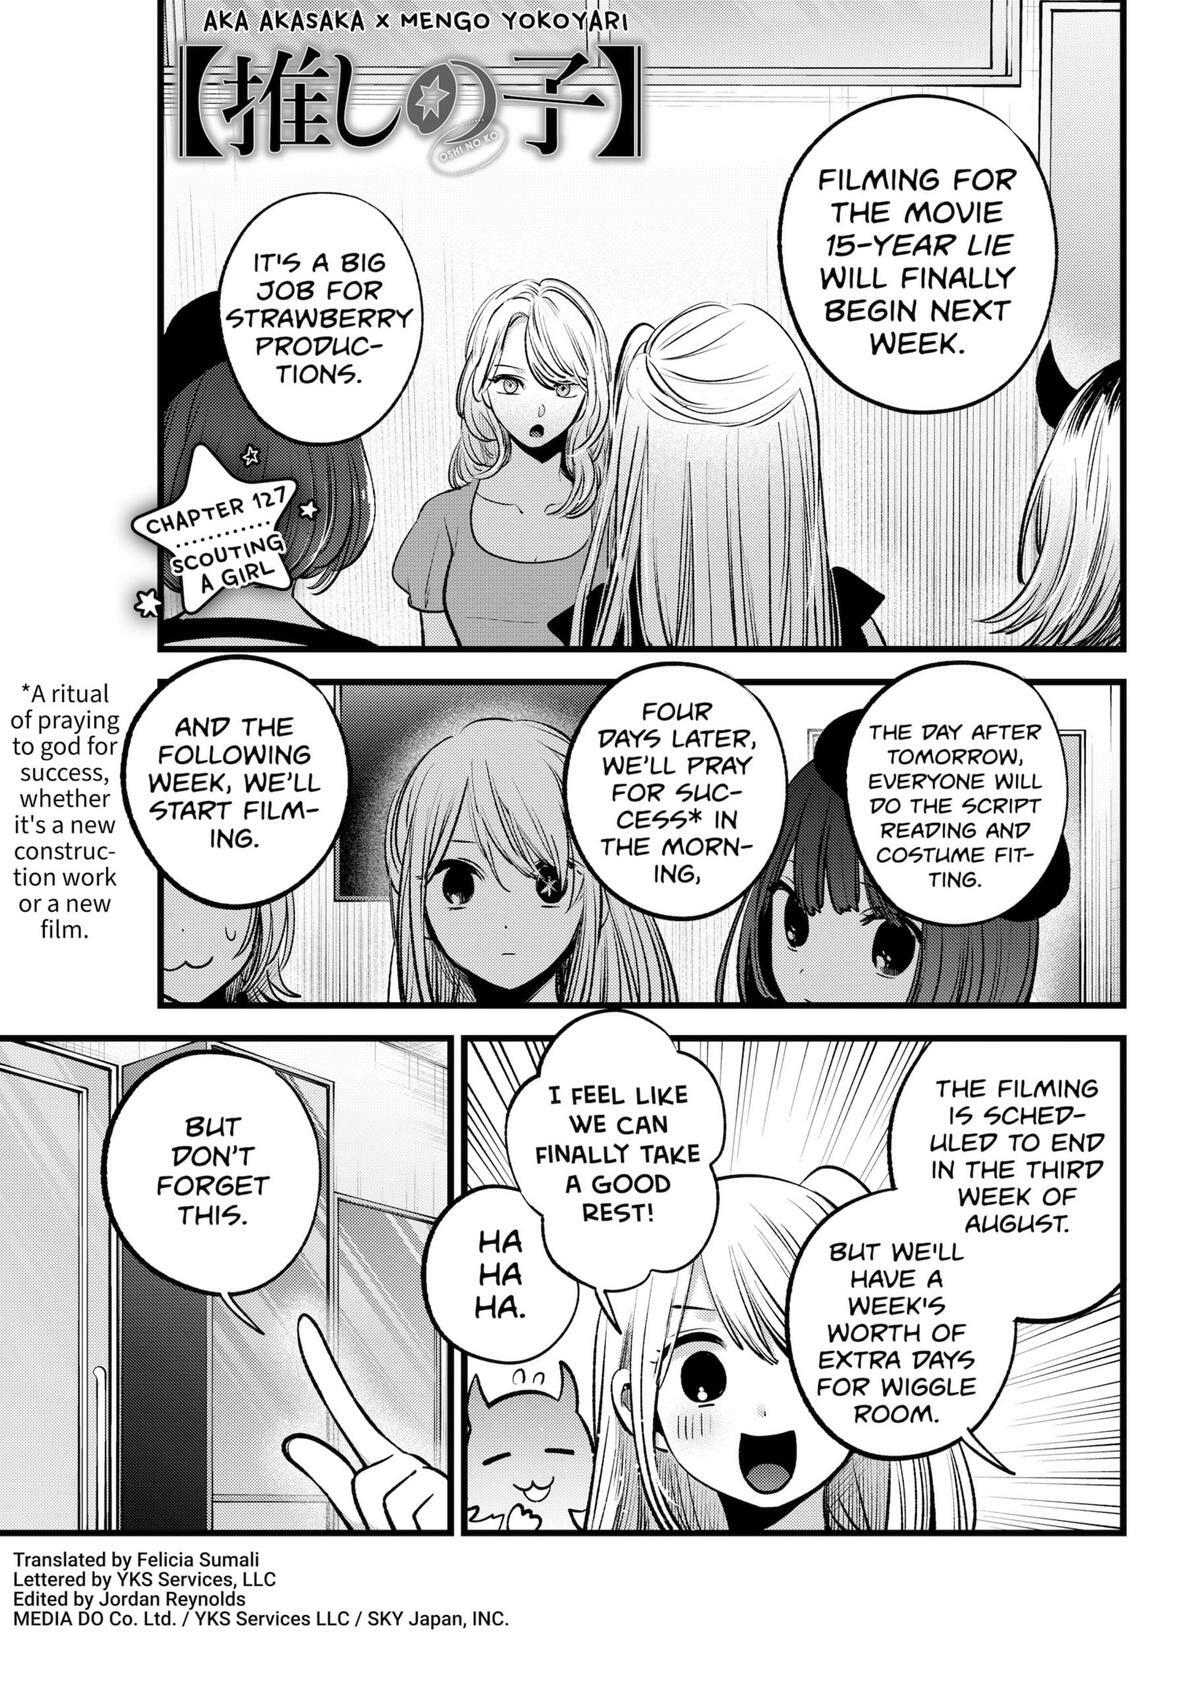 Oshi no ko, Chapter 112 - Oshi no ko Manga Online